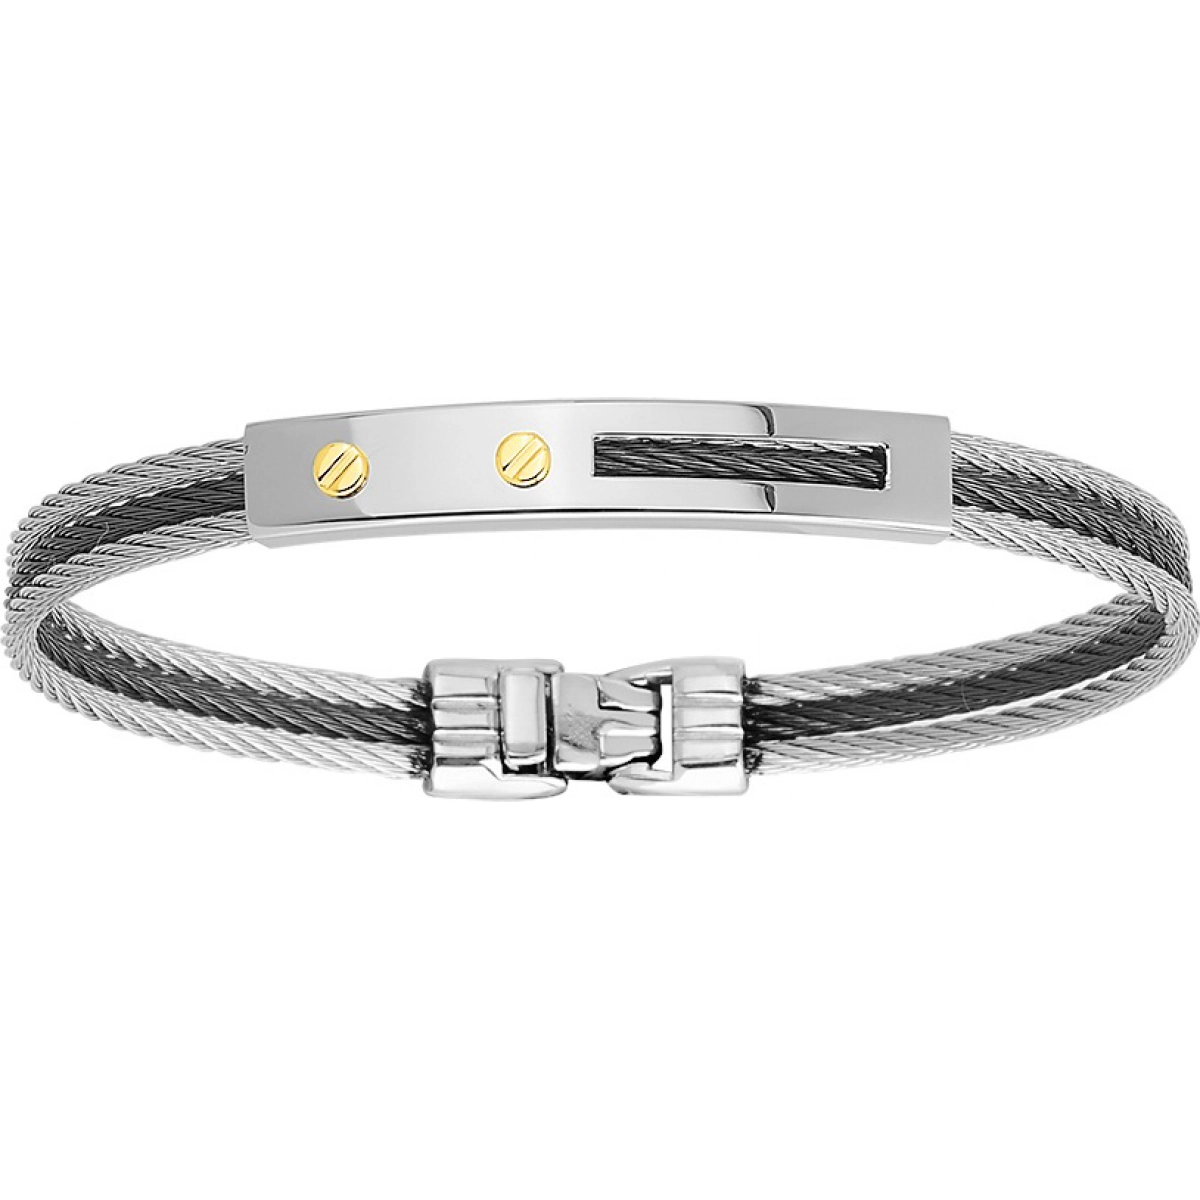 Bracelet w. golden screw stainless steel  Lua Blanca  6275.0